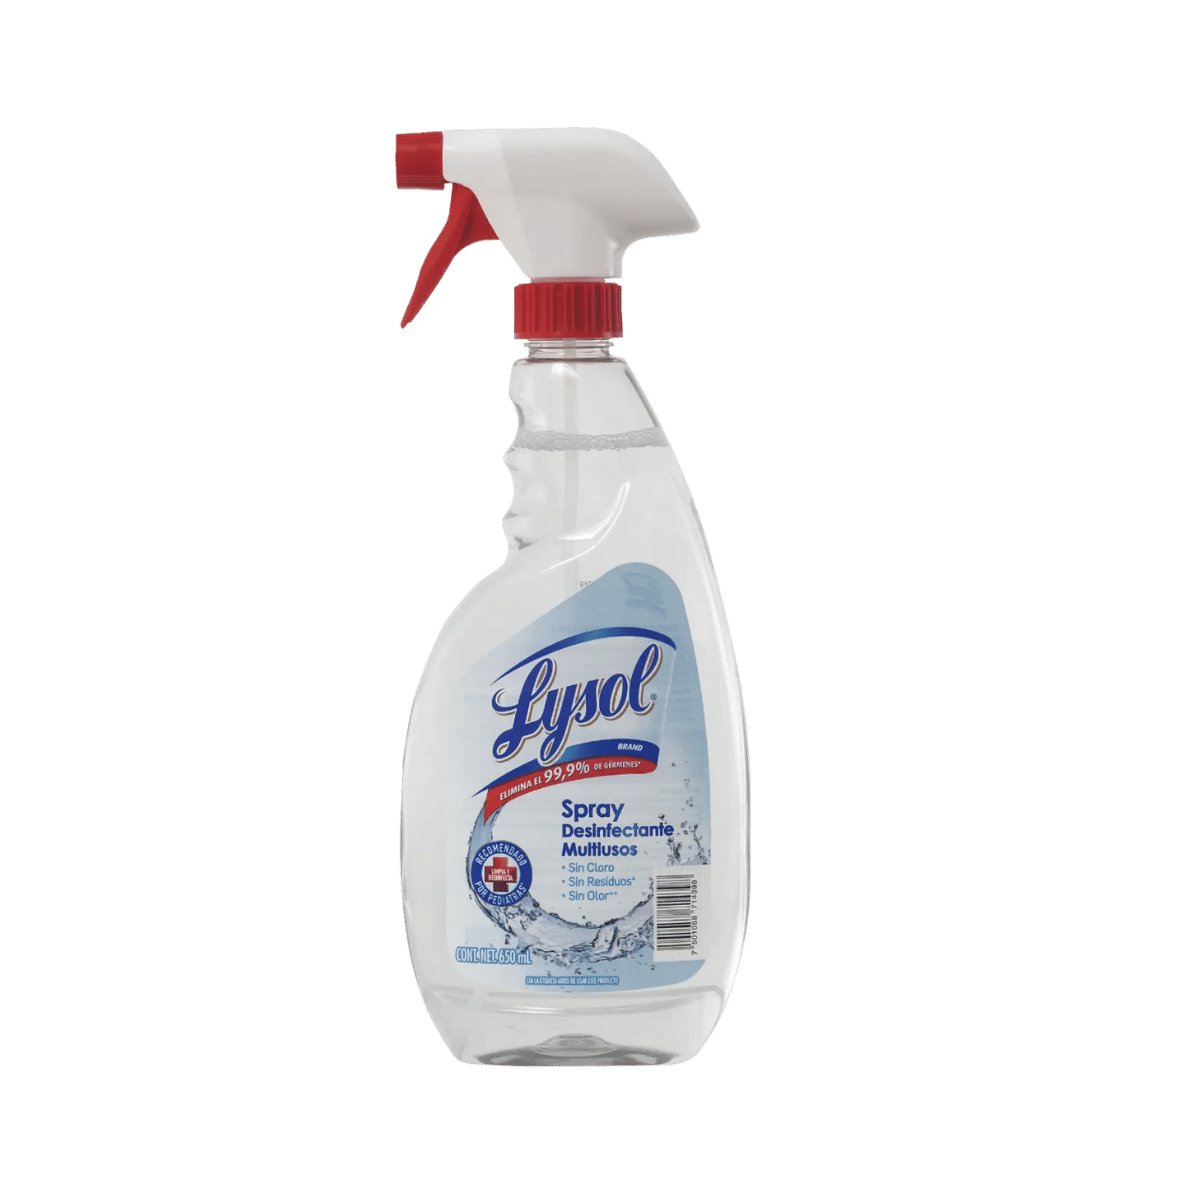 Lysol® Spray Desinfectante Multiusos - Trigger - Karlan ¡Marca la Limpieza!RB-3029243